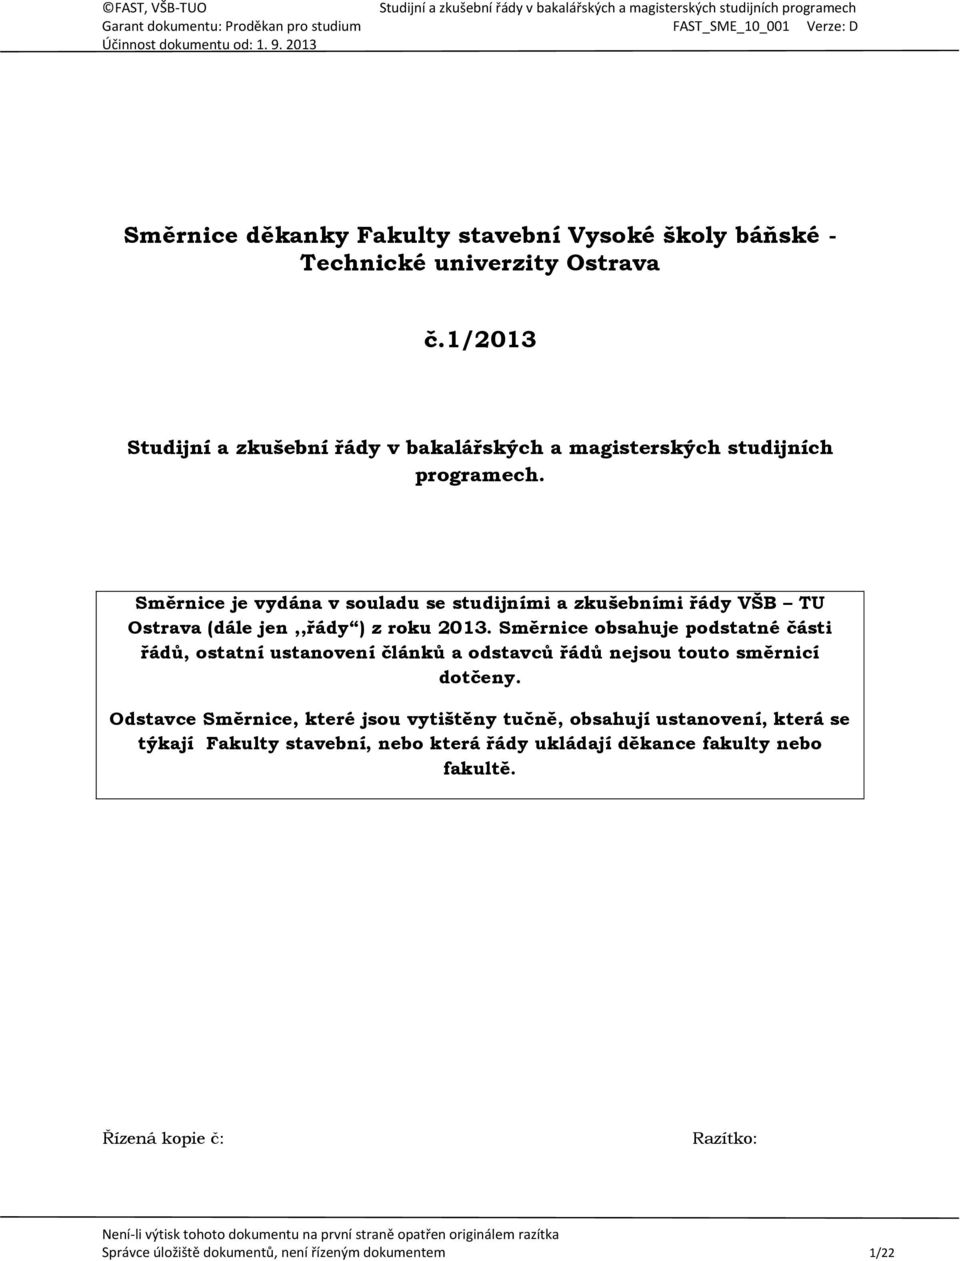 Směrnice je vydána v souladu se studijními a zkušebními řády VŠB TU Ostrava (dále jen,,řády ) z roku 2013.